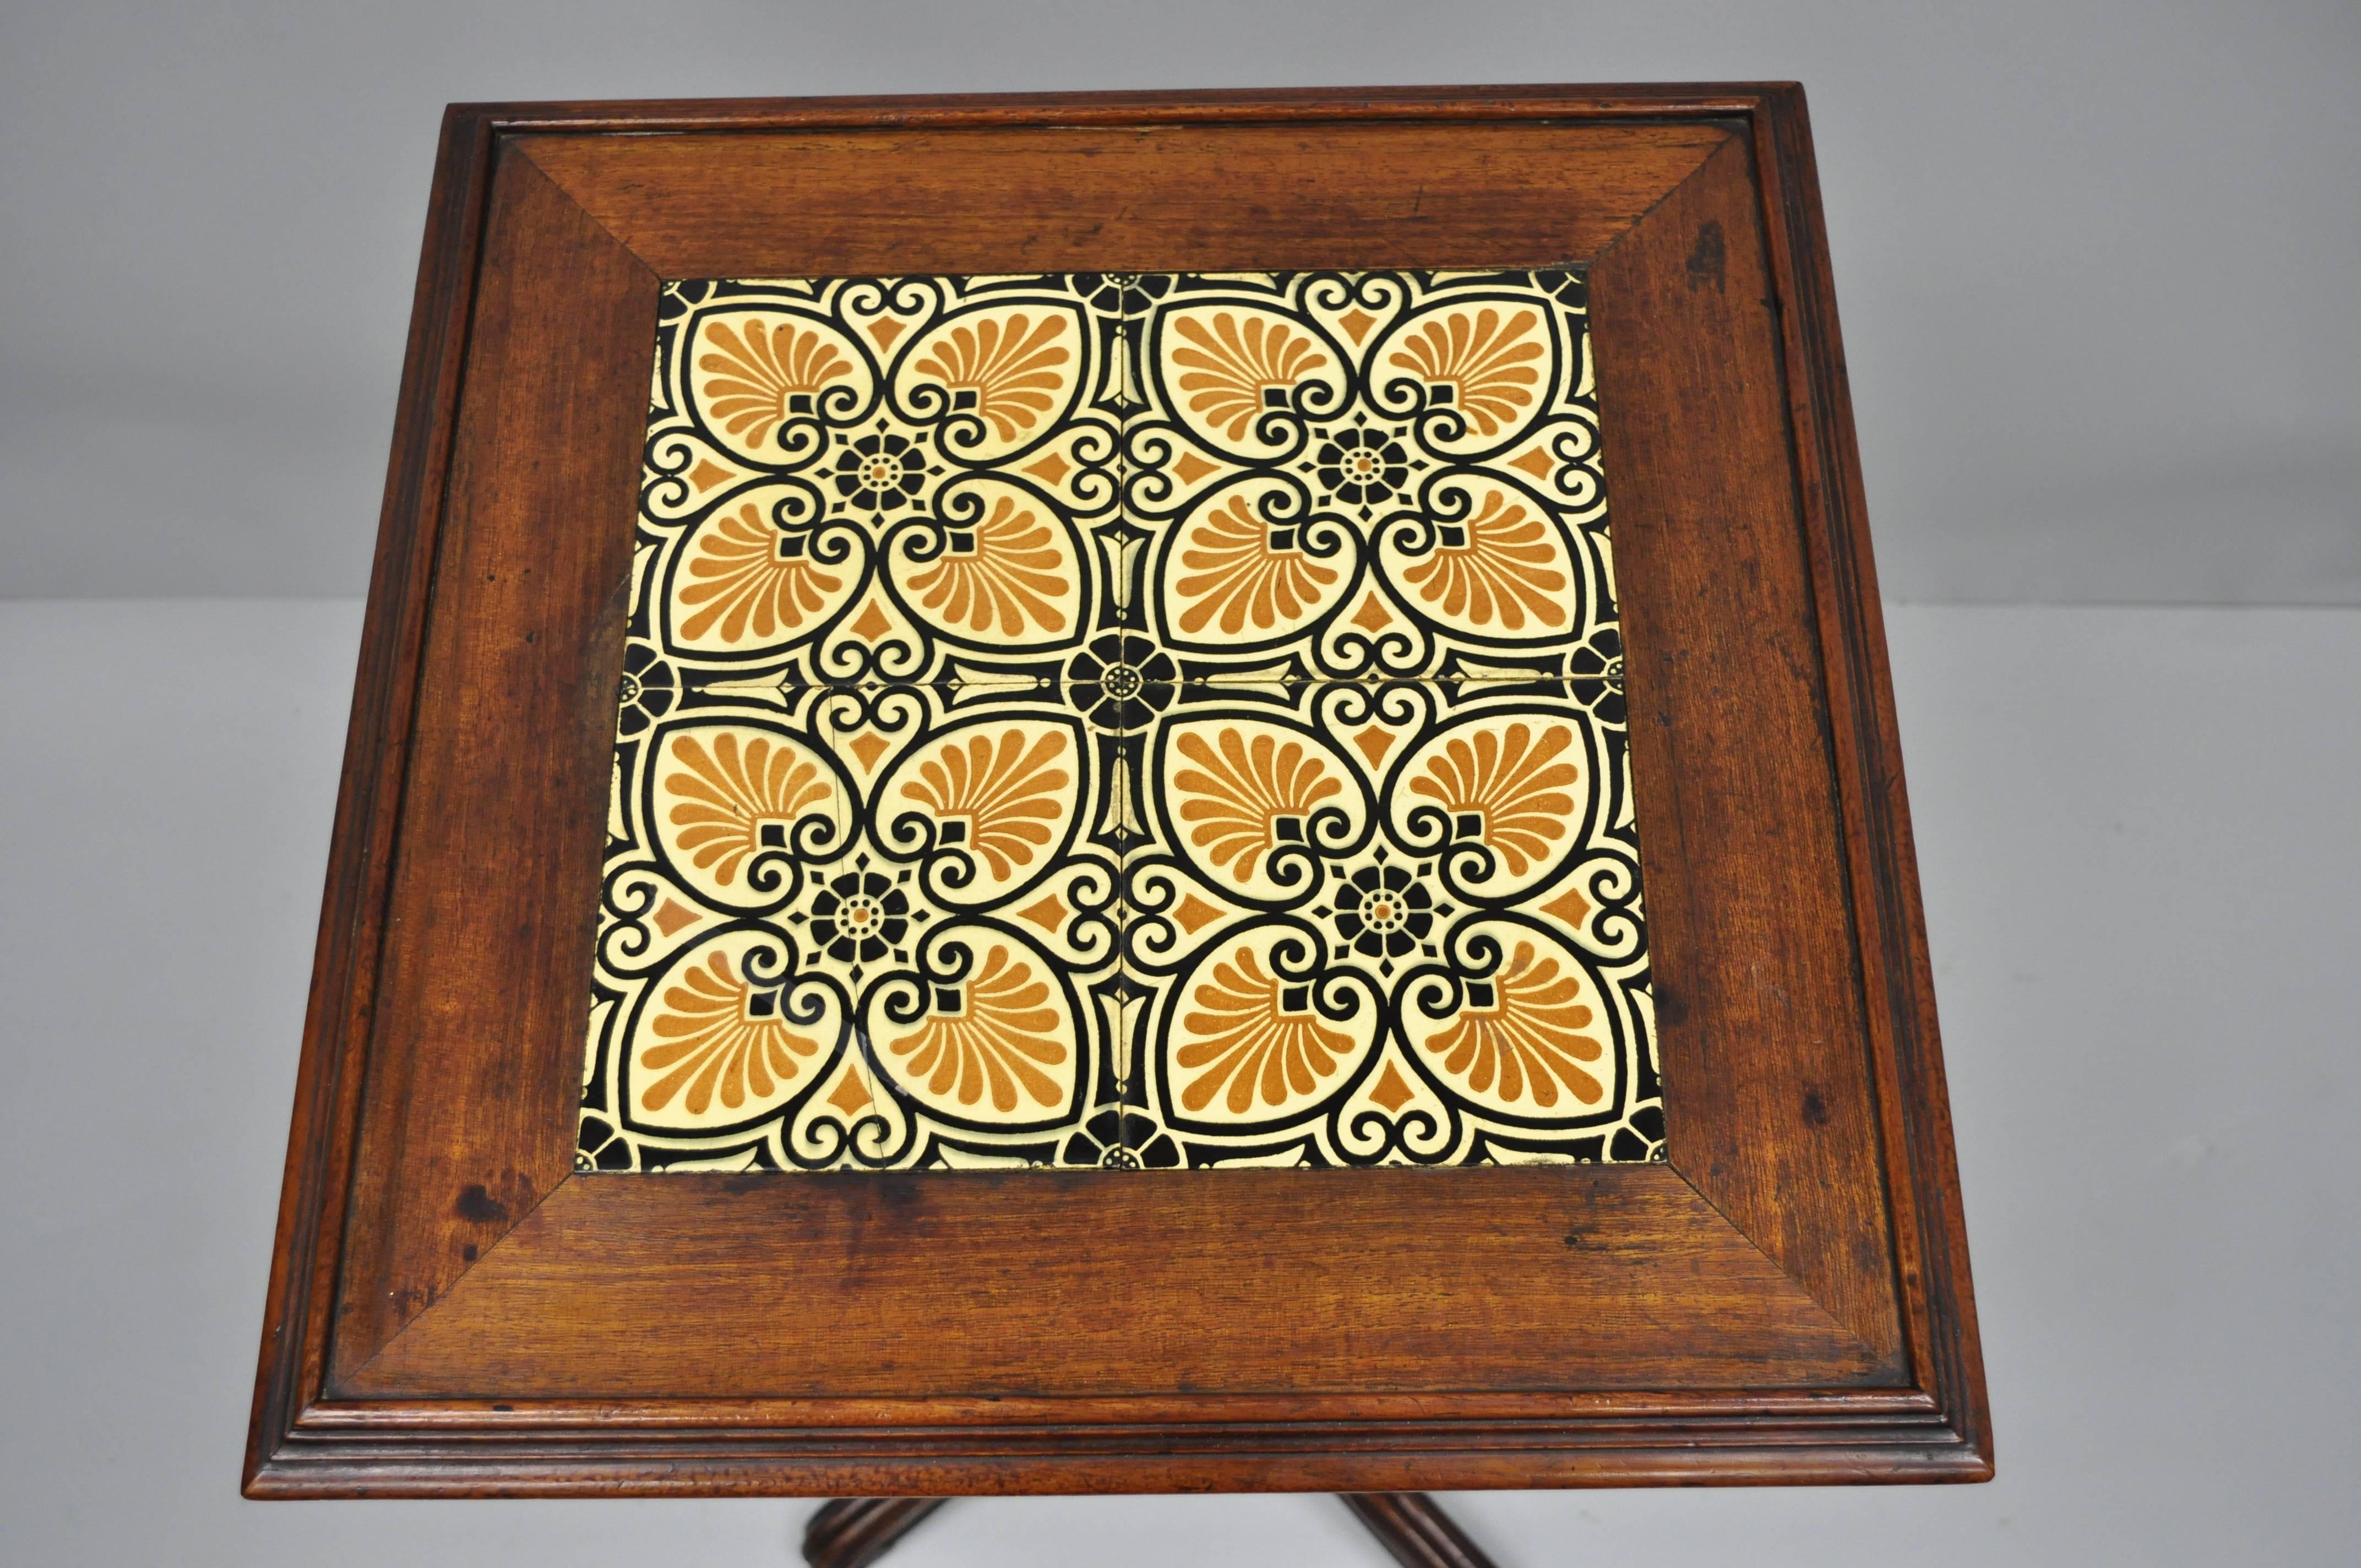 Antique walnut tile-top Arts & Crafts renaissance revival pedestal table. Item features (4) 6